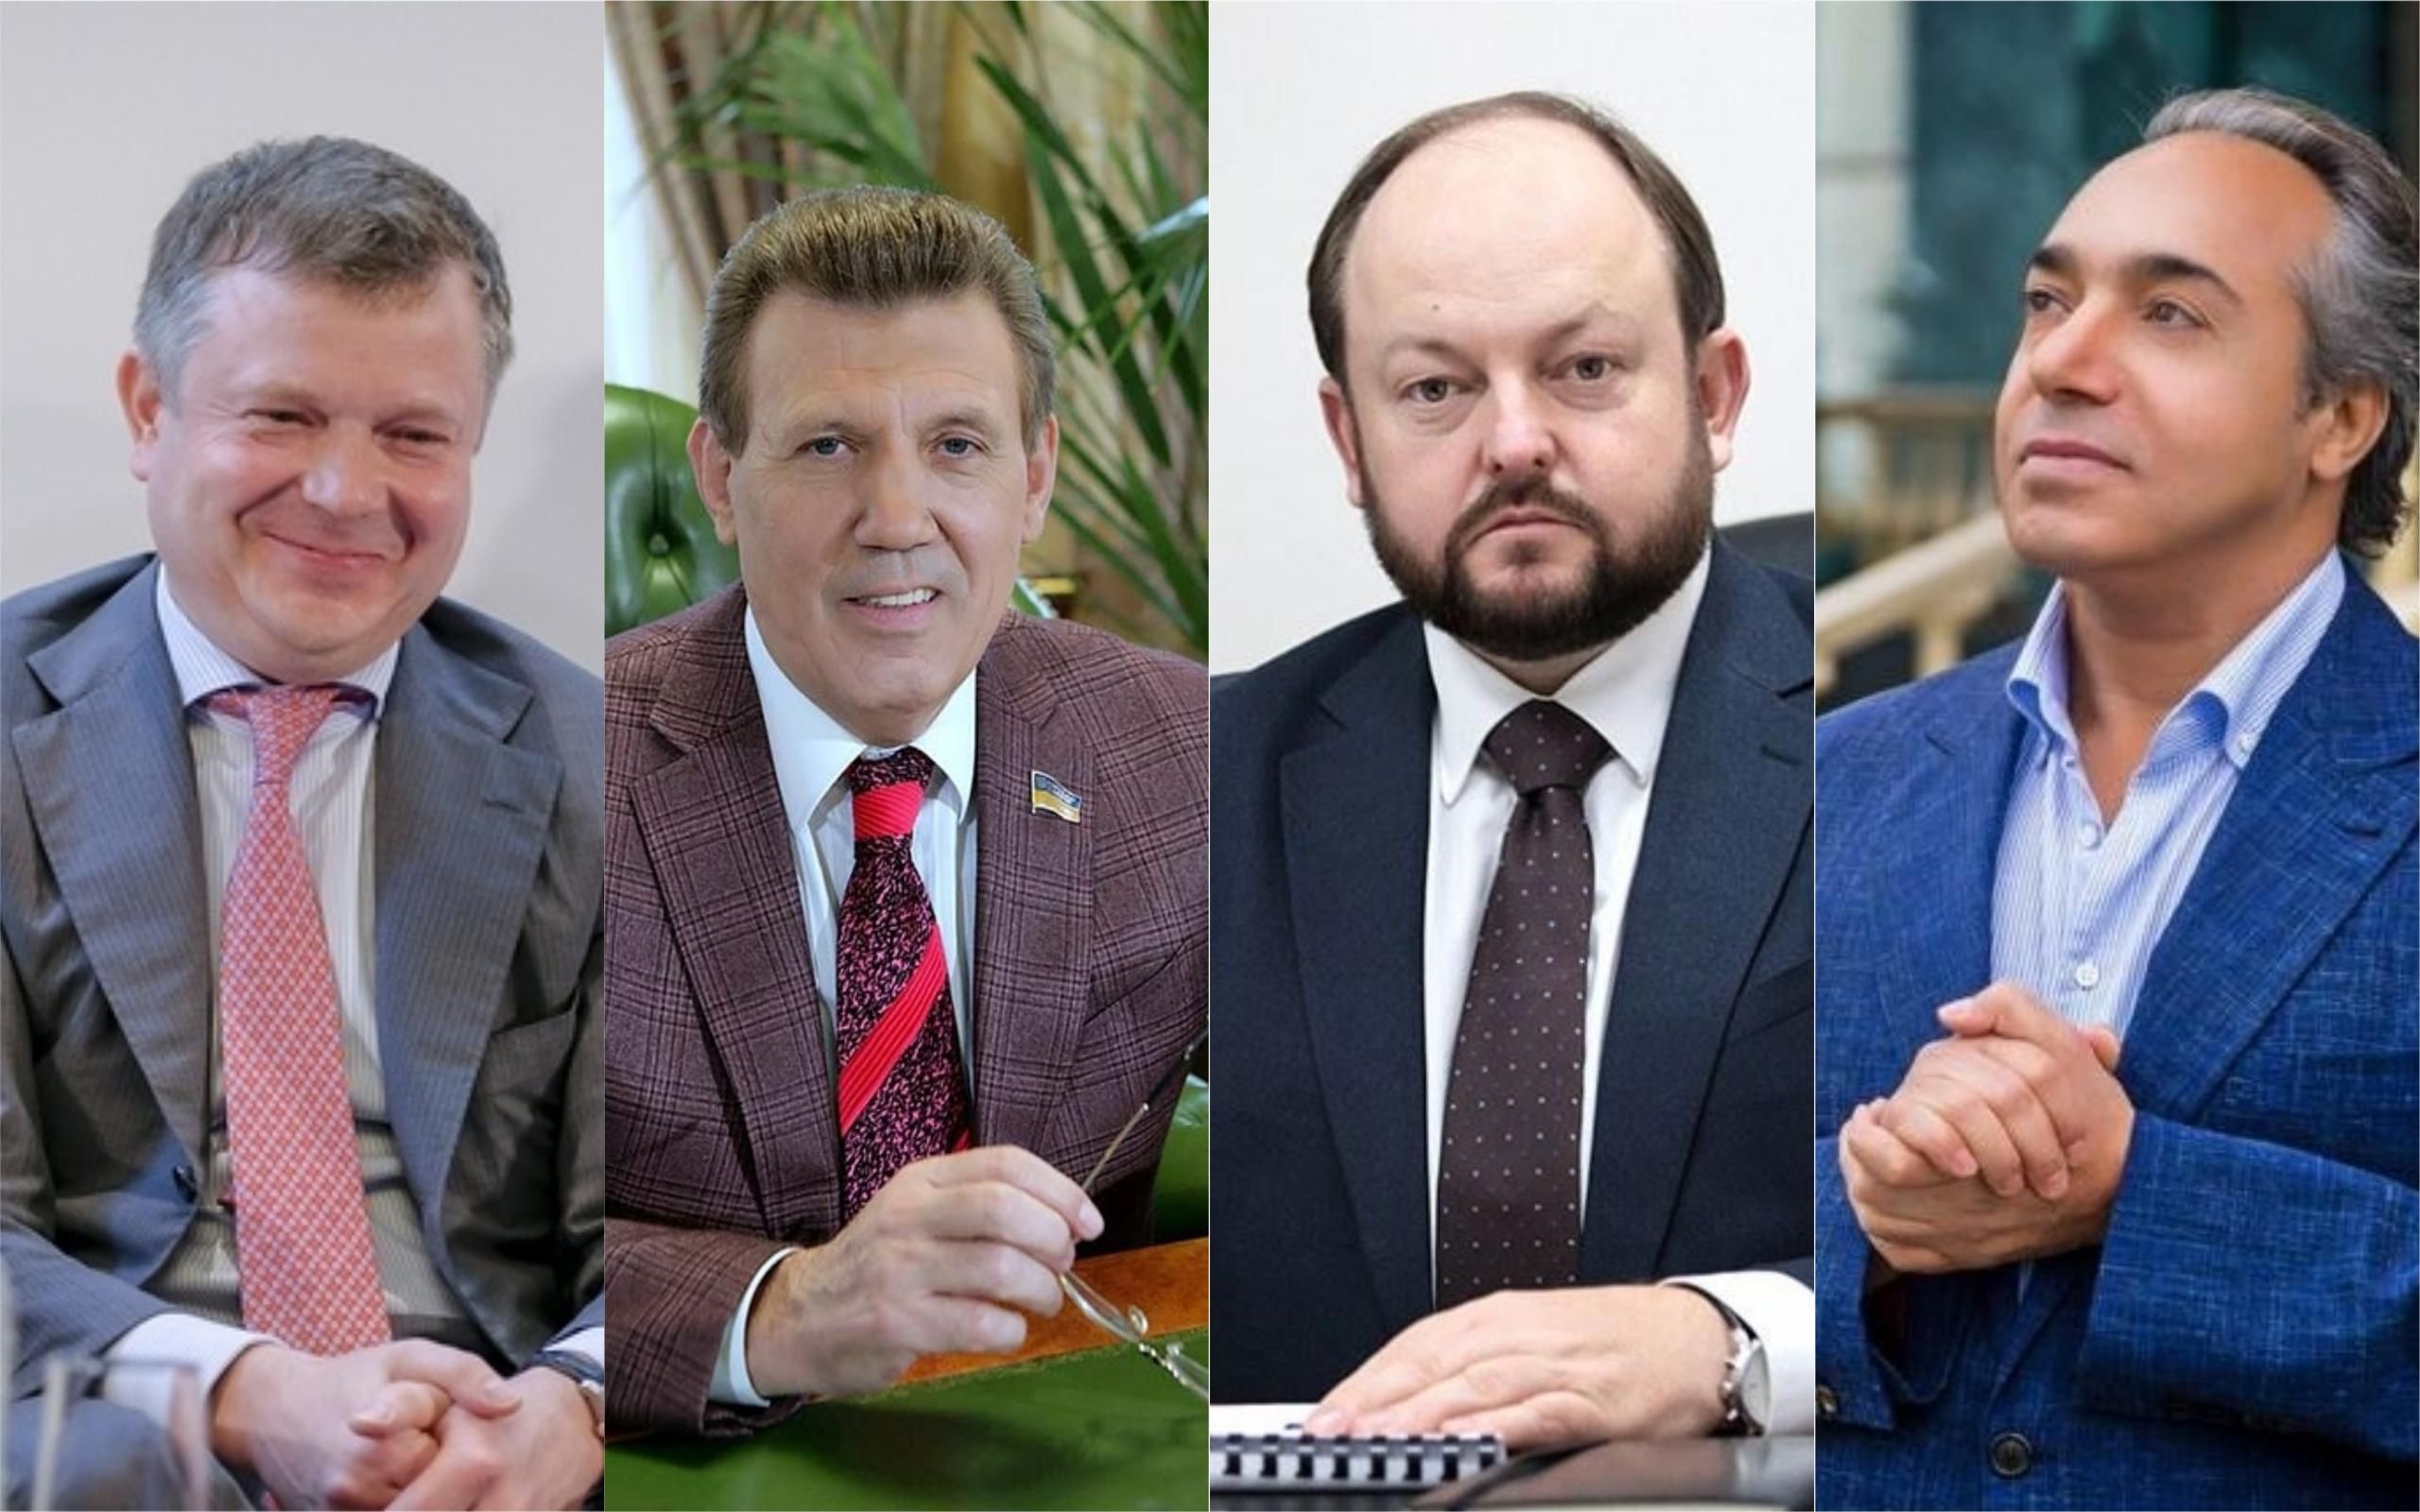 Депутаты, олигархи и чиновники: украинцы попали под массовую утечку о багамских оффшорах